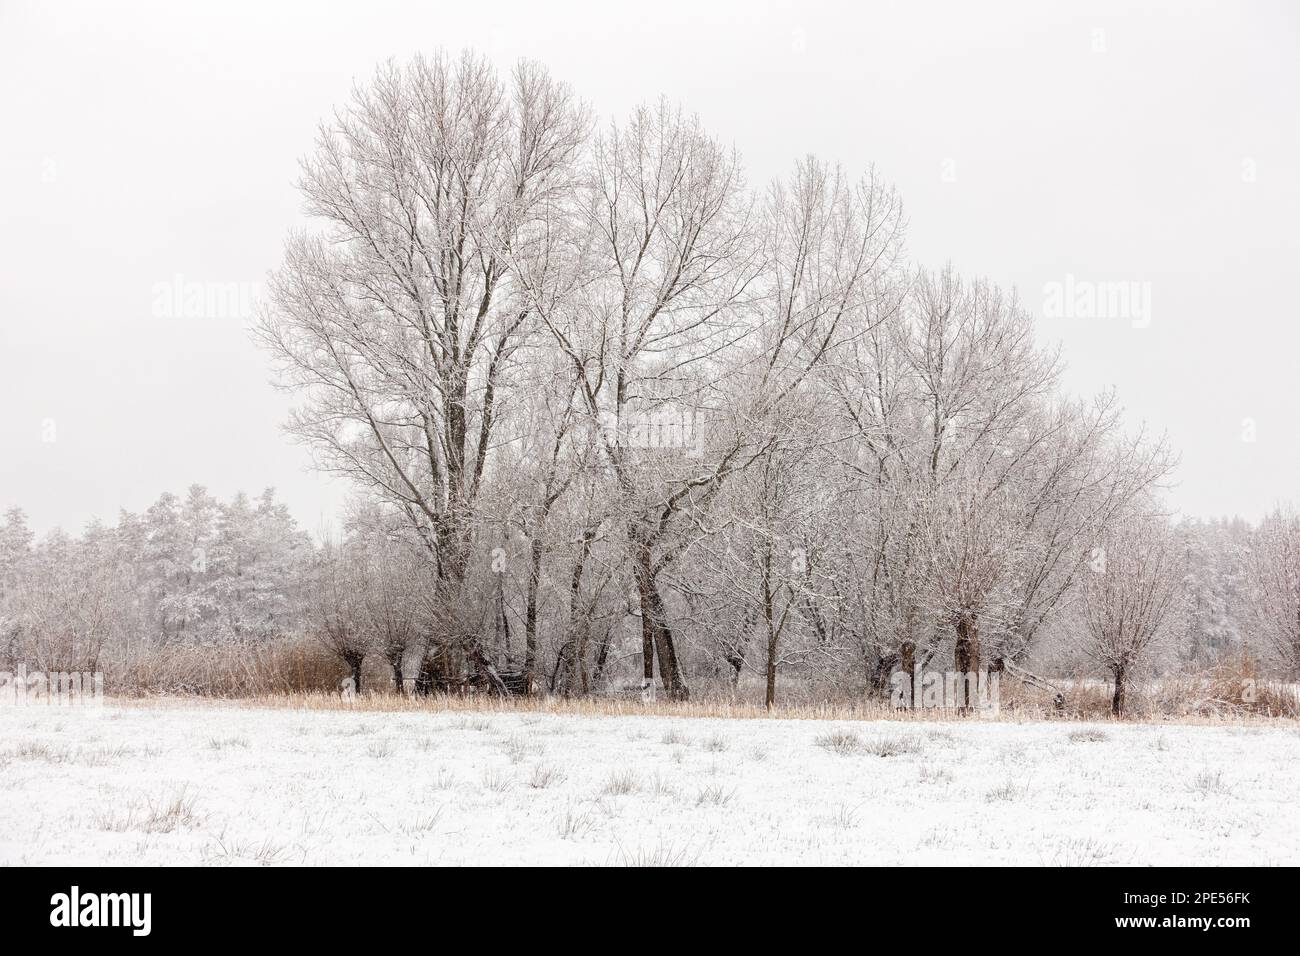 Winterbeginn in Meerbusch, Nordrhein-Westfalen. Starker Schneefall in einem Naturschutzgebiet, Ilvericher Altrheinschlinge nahe Düsseldorf. Stockfoto